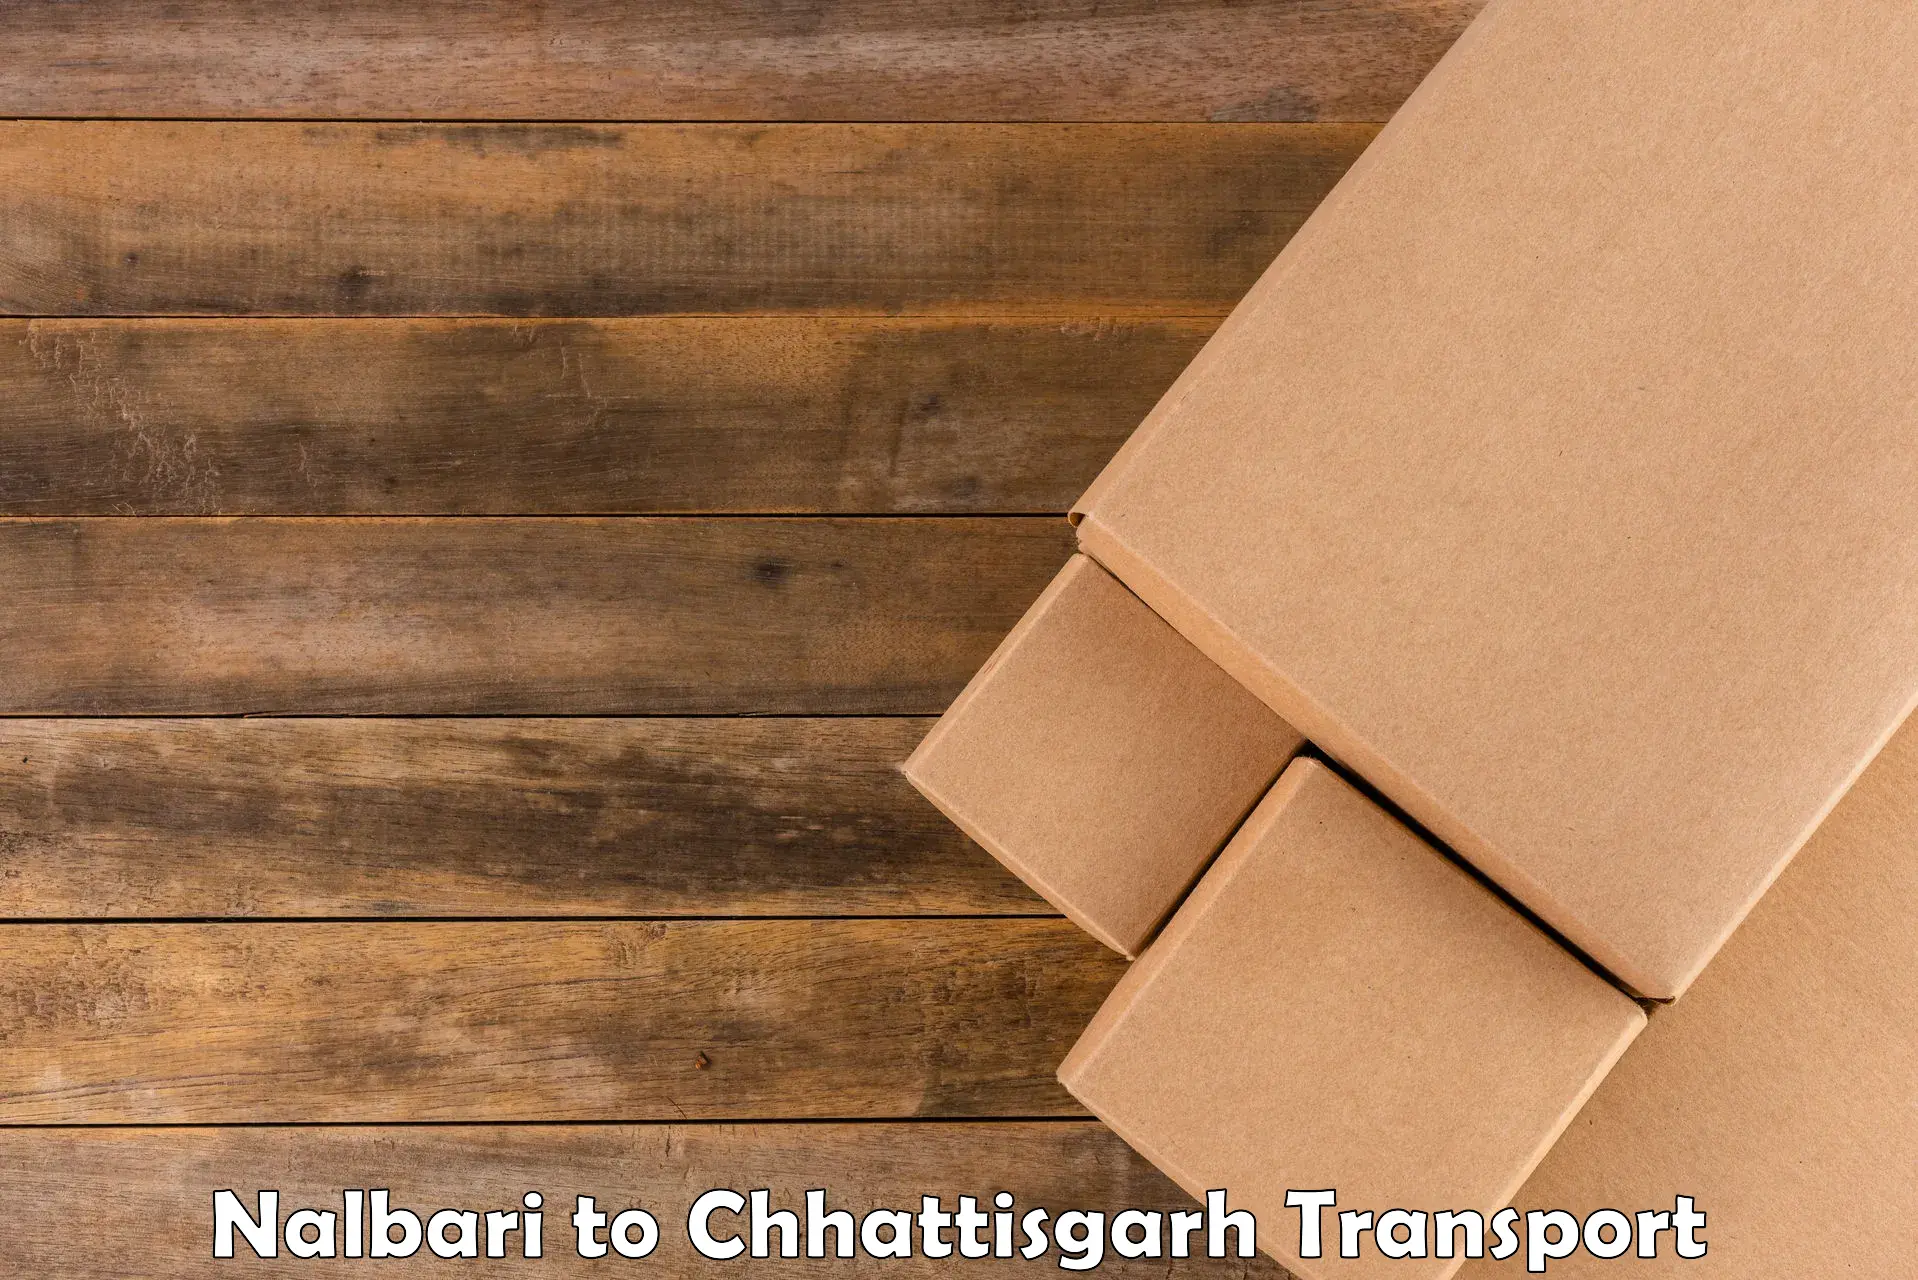 Delivery service Nalbari to Chhattisgarh